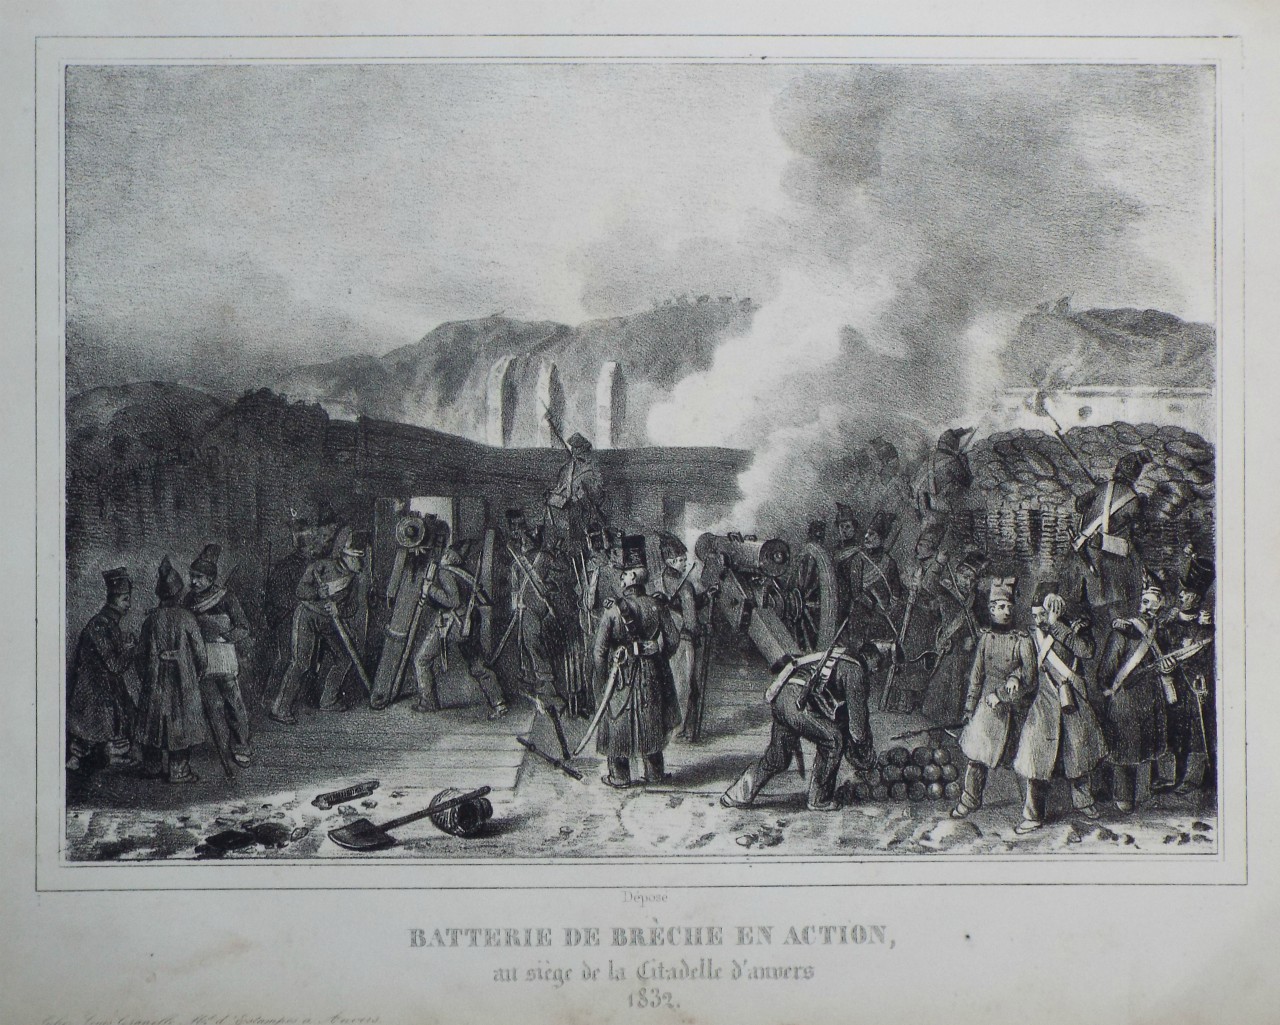 Lithograph - Batterie de Breche en Action, au siege de la Citadelle d'anvers 1832.